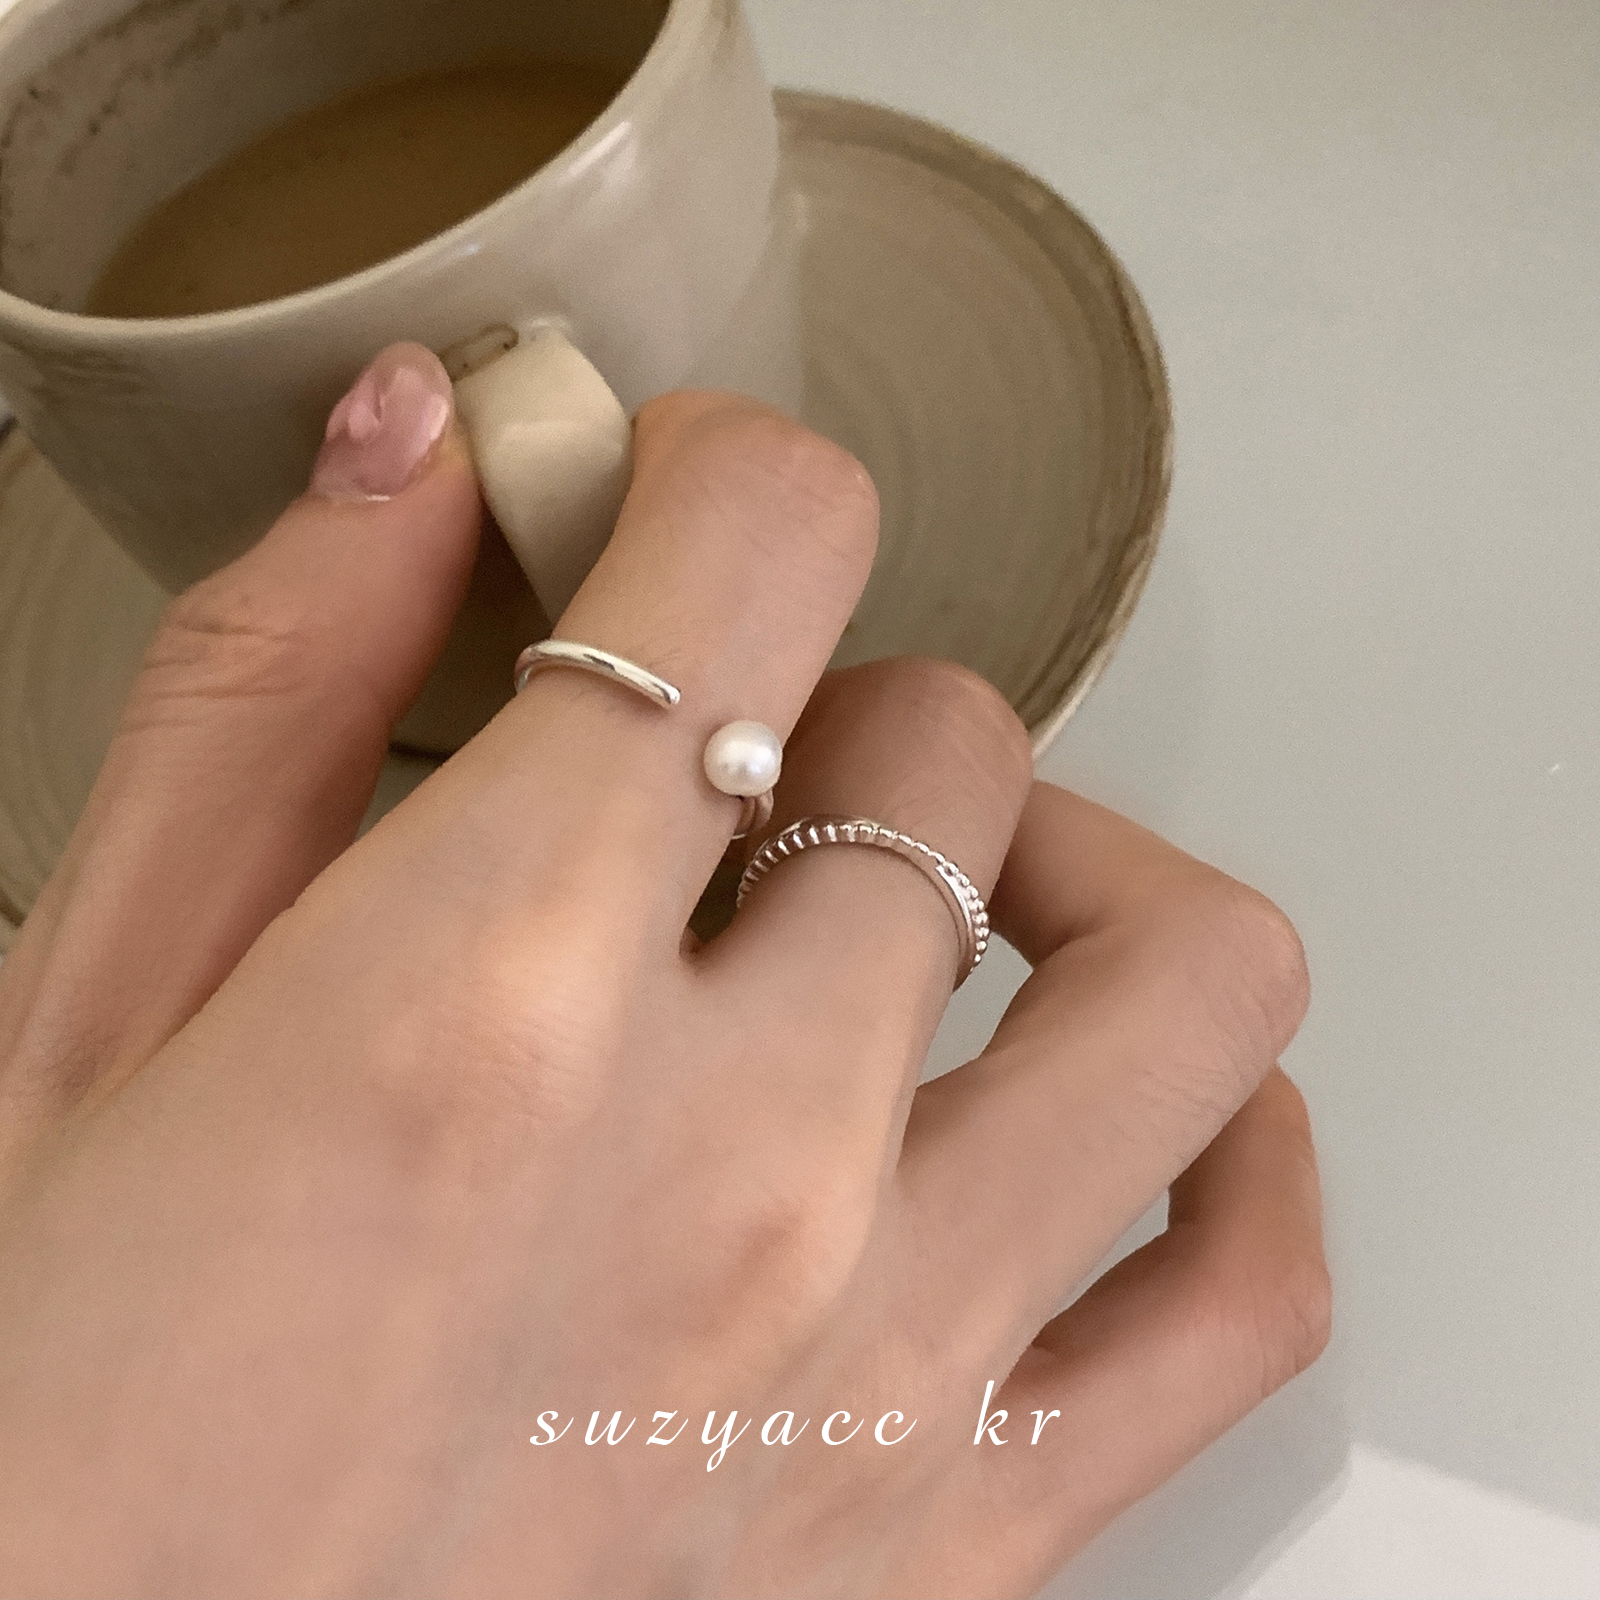 suzyacc kr极简纯银珍珠开口细戒时尚个性食指戒ins小众设计戒指